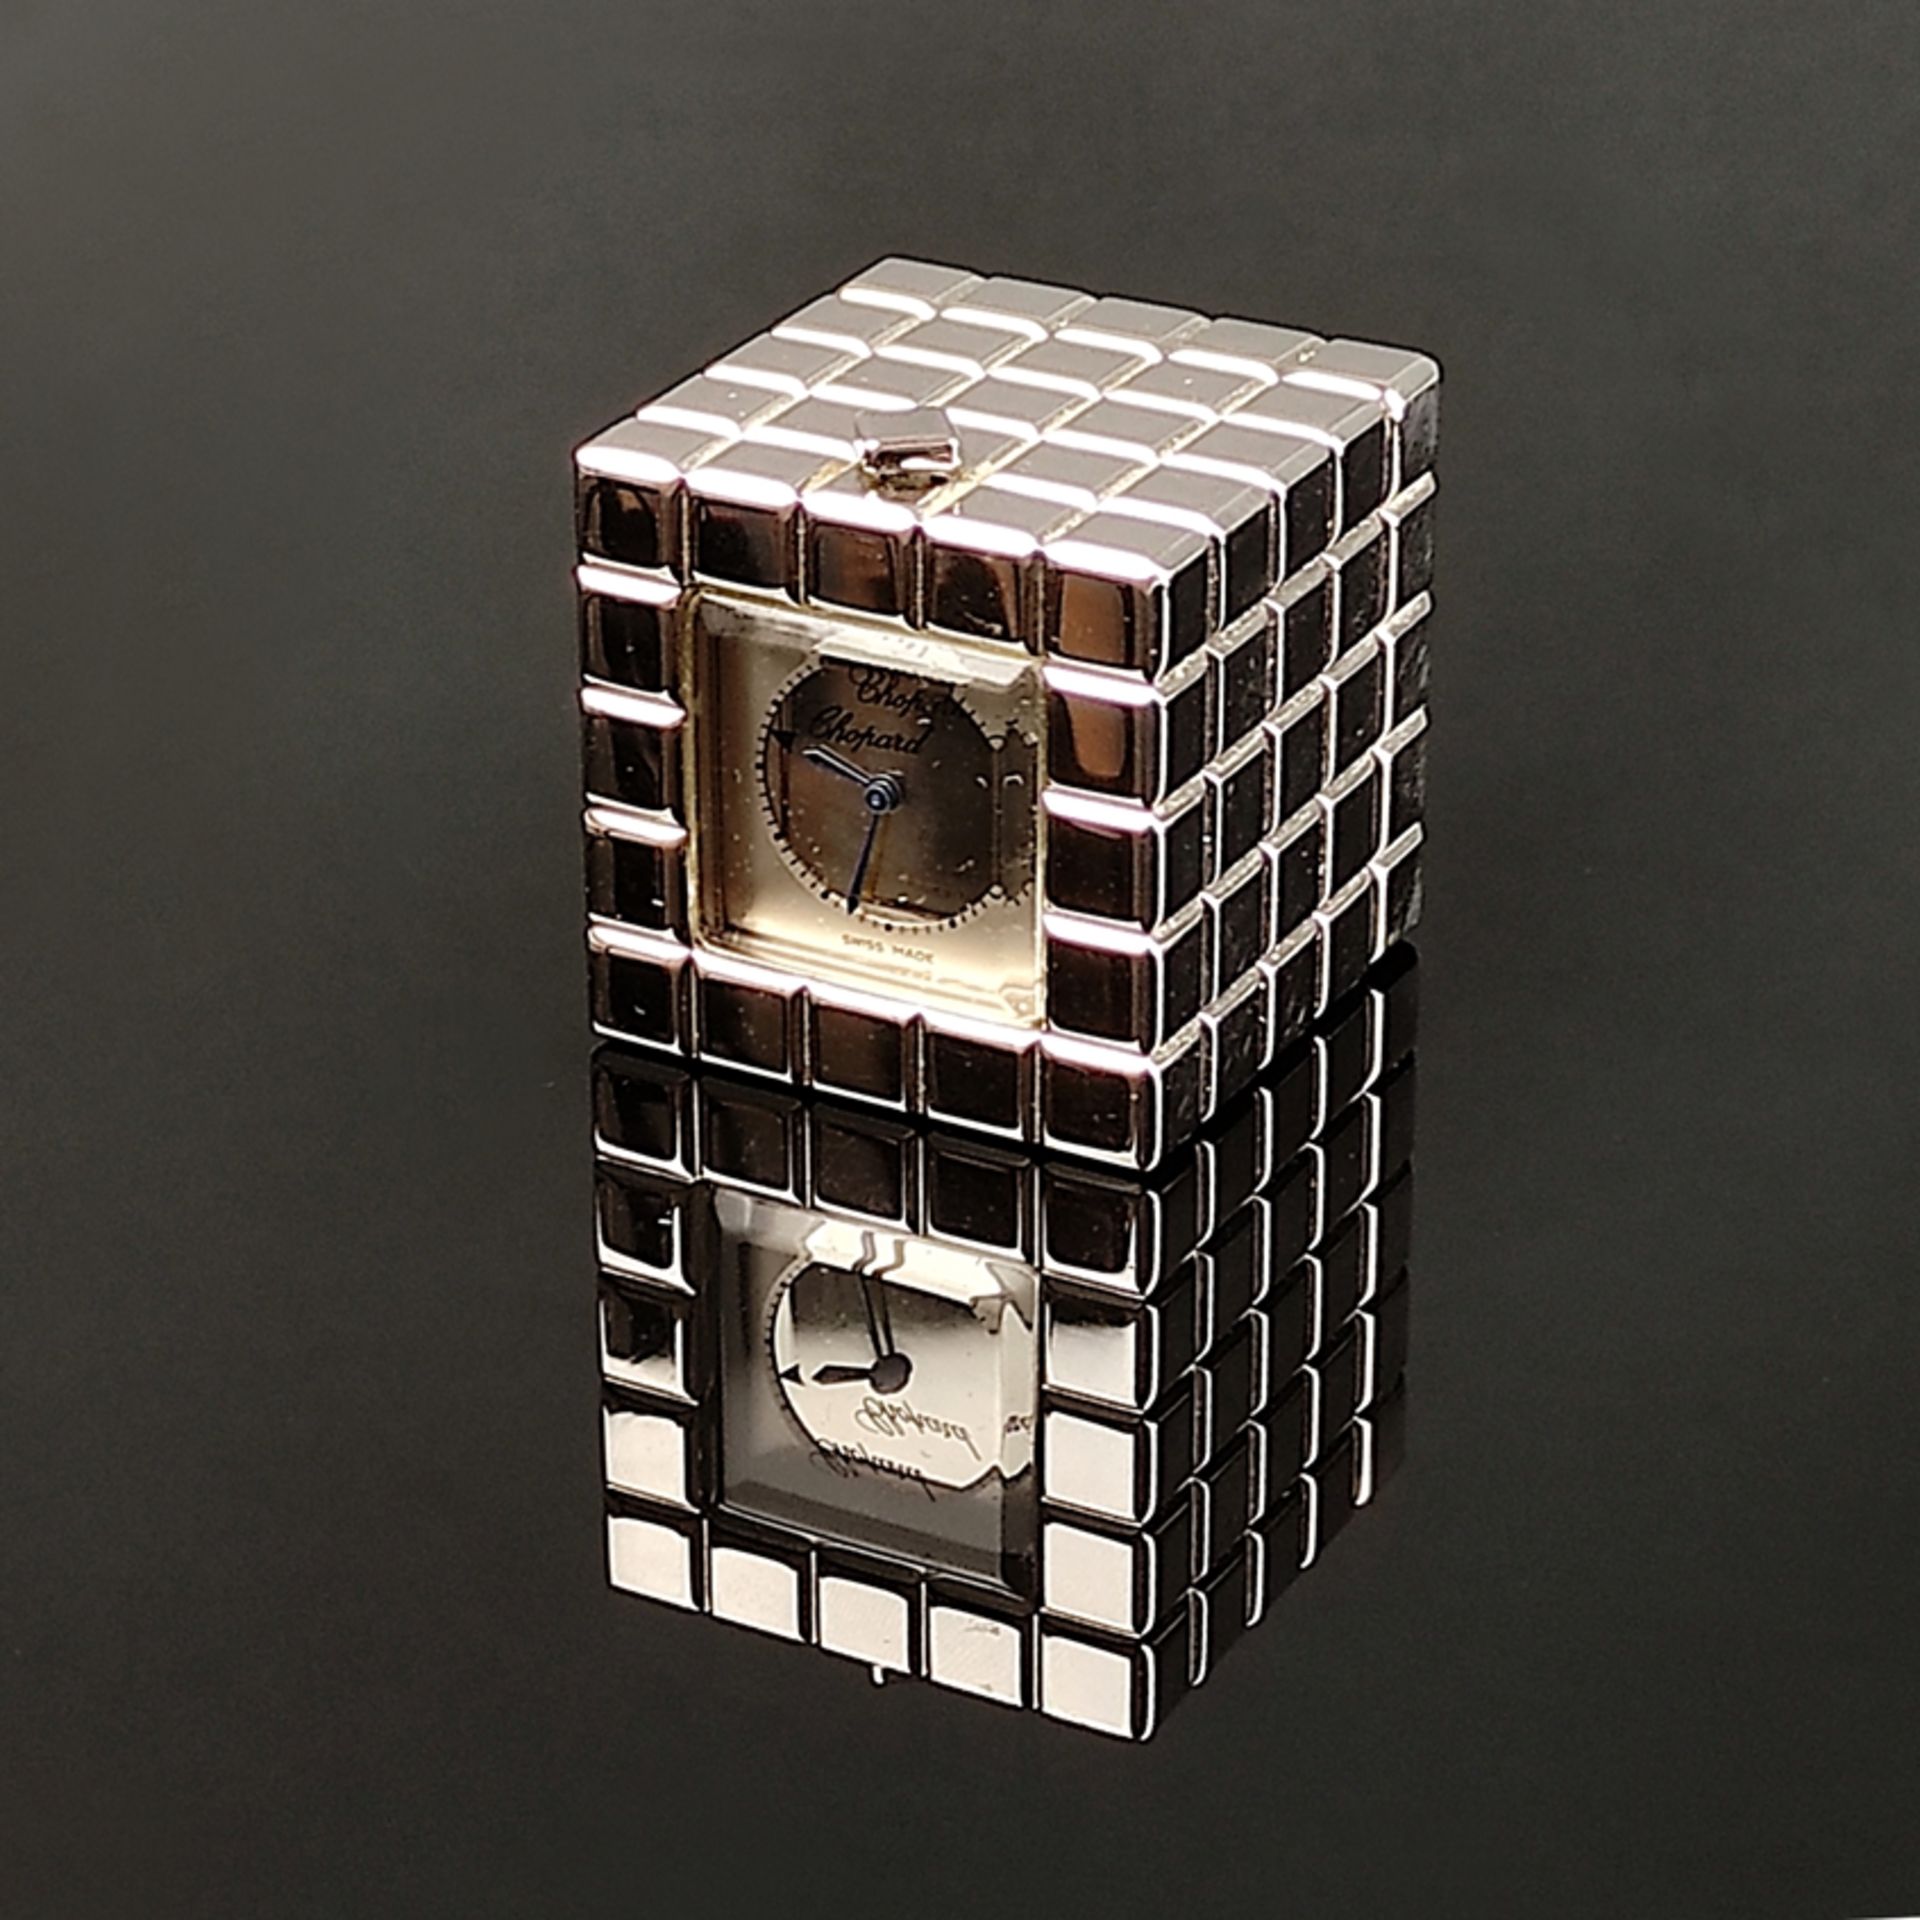 Chopard Ice Cube Tischuhr, Ref.051/8898/01, Quarz-Werk, Seriennummer 1029207, Maße 3,5x3,5x3,5cm